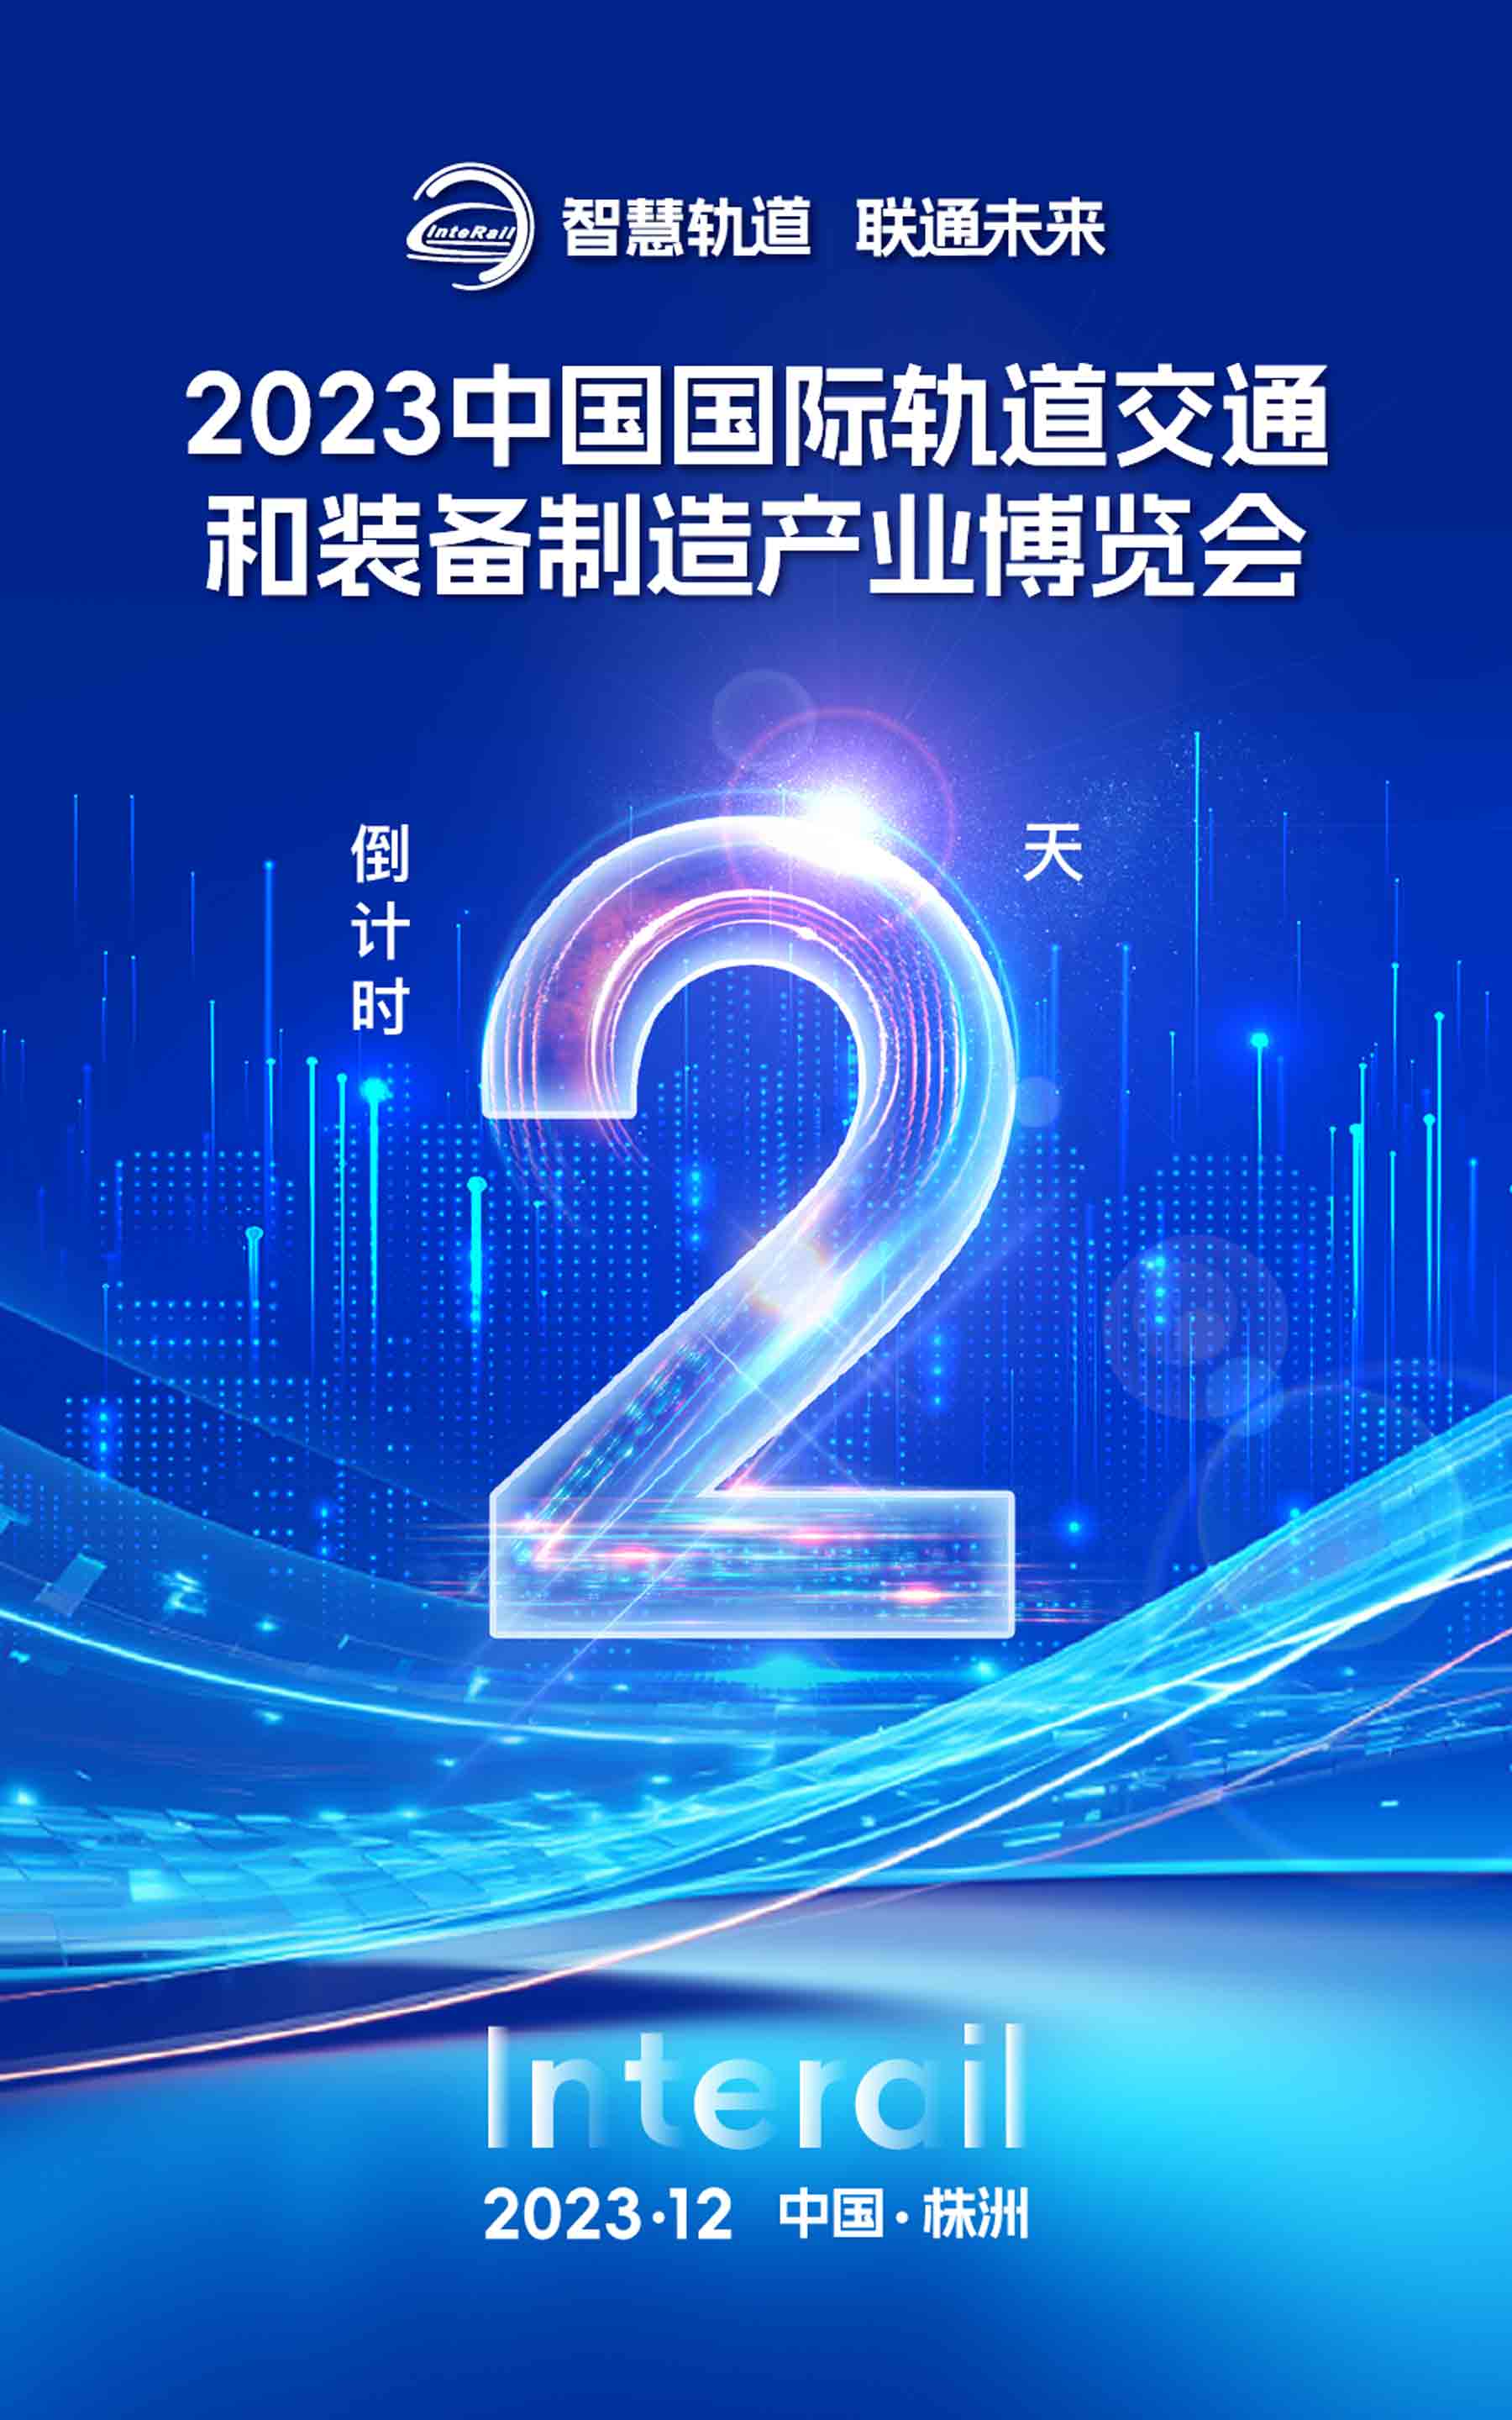 距離2023中國國際軌道交通和裝備制造產業博覽會開幕 還有2天！